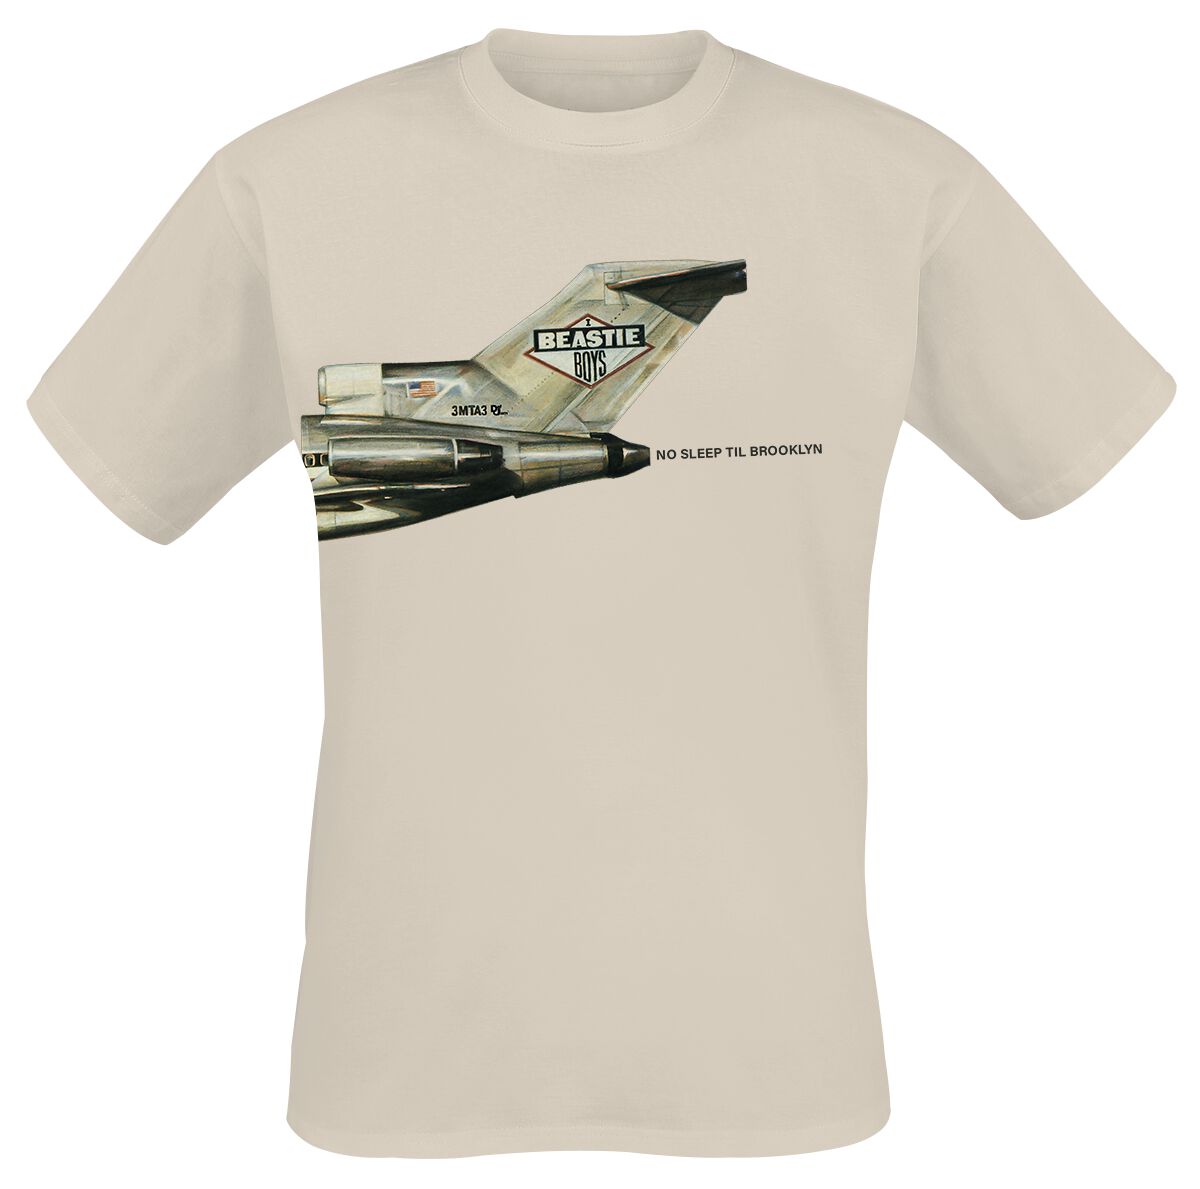 Beastie Boys T-Shirt - No Sleep Til Brooklyn Plane - S bis 3XL - für Männer - Größe XXL - sand  - Lizenziertes Merchandise!